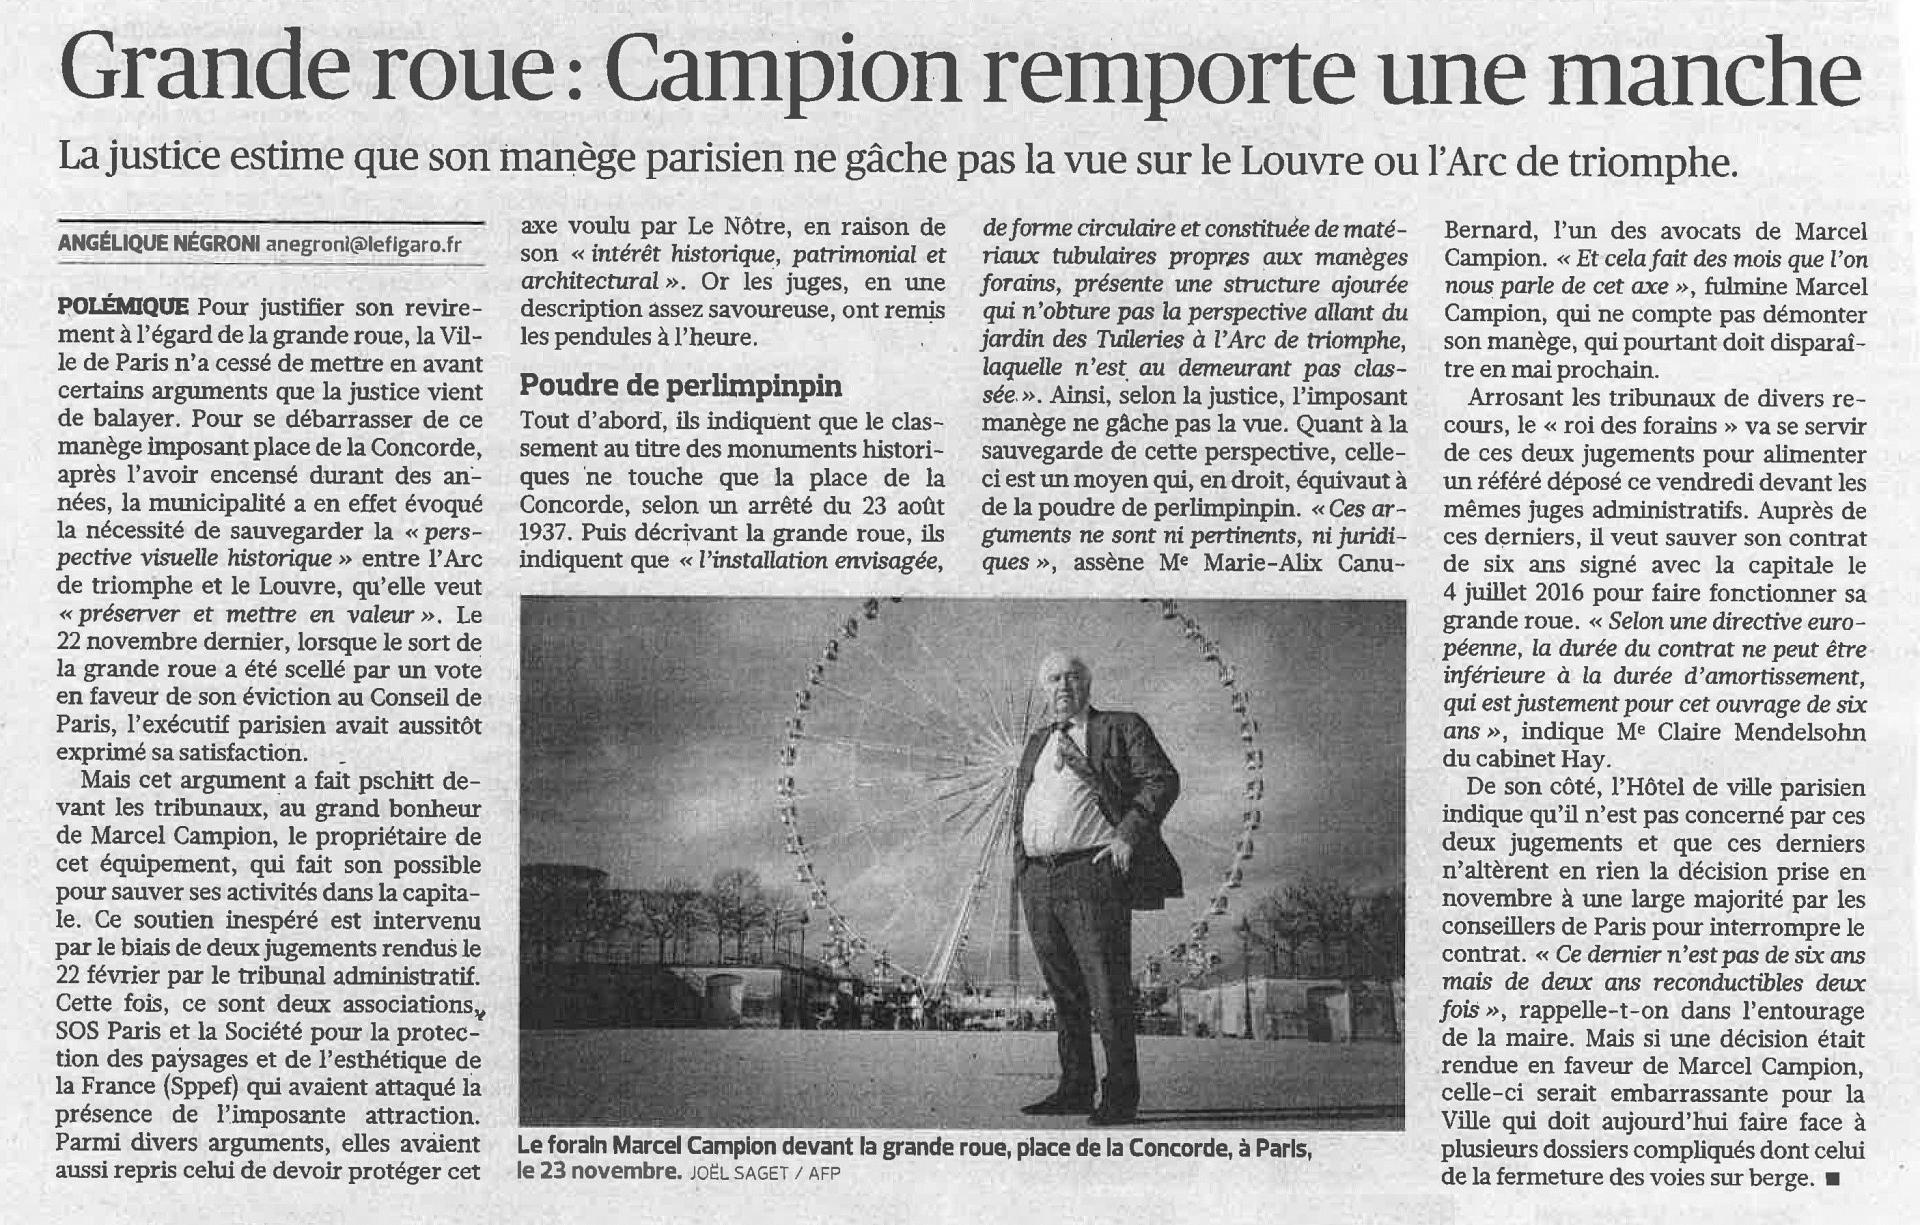 Le Figaro du 6 mars 2018 Angélique Negroni